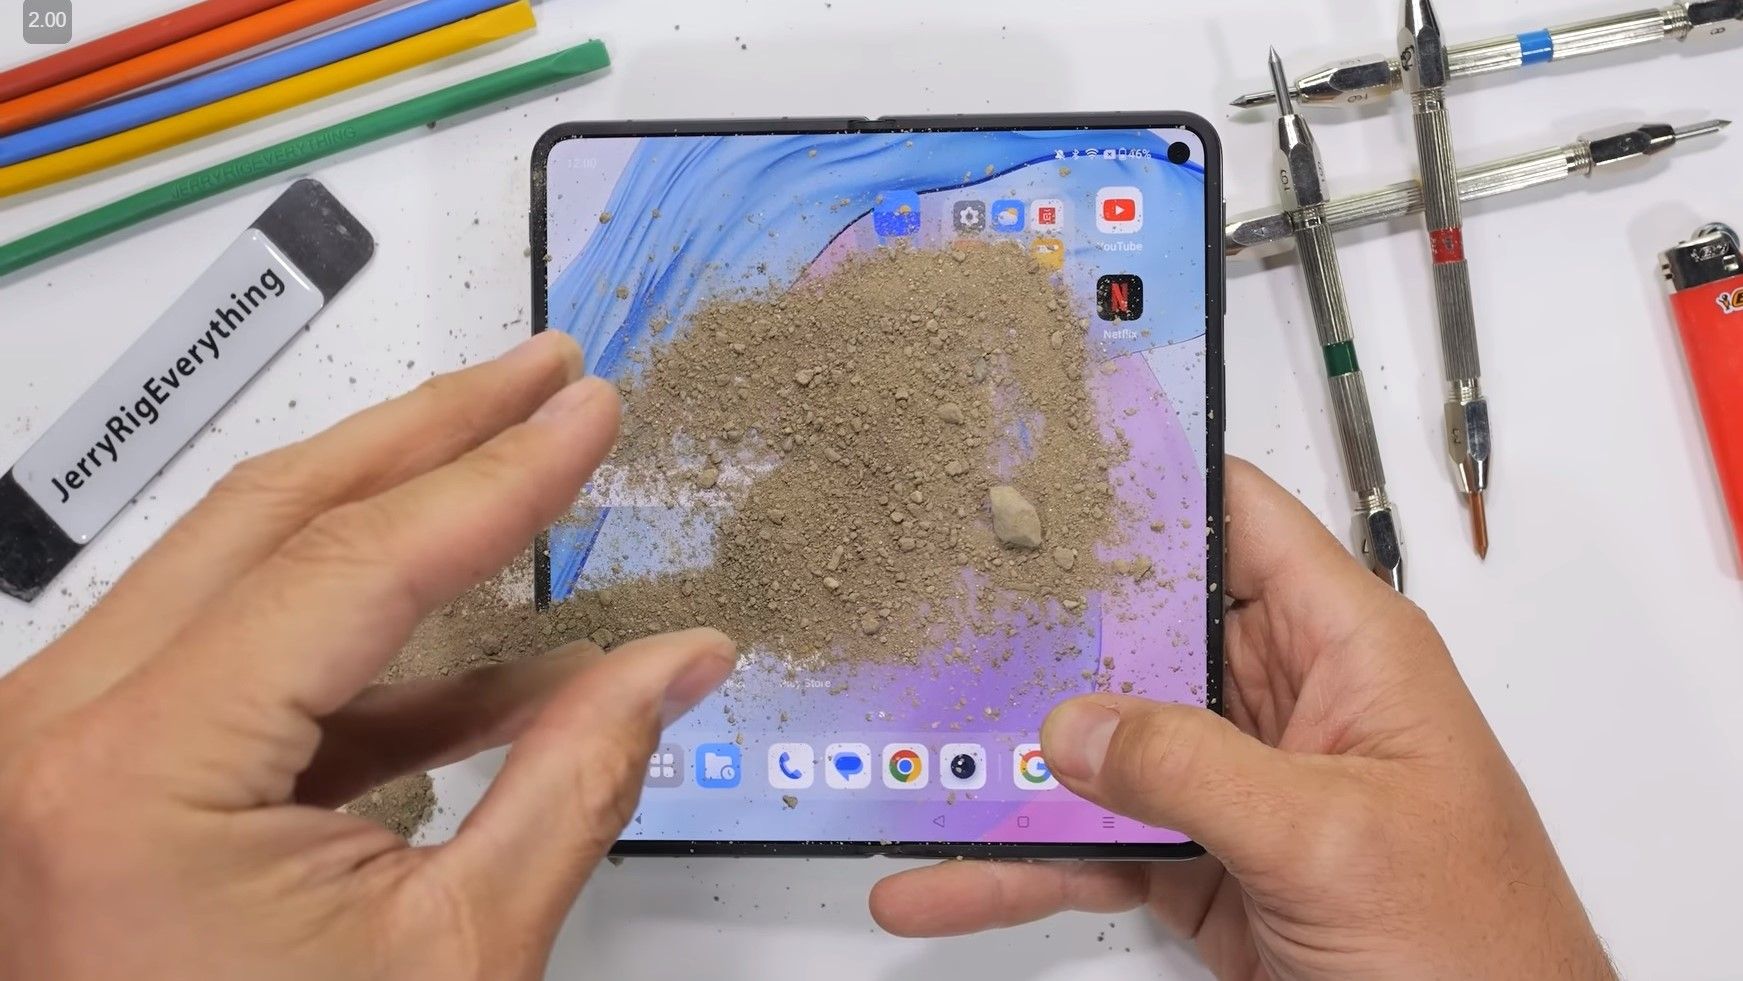 Polvilhando areia na tela interna do OnePlus Open